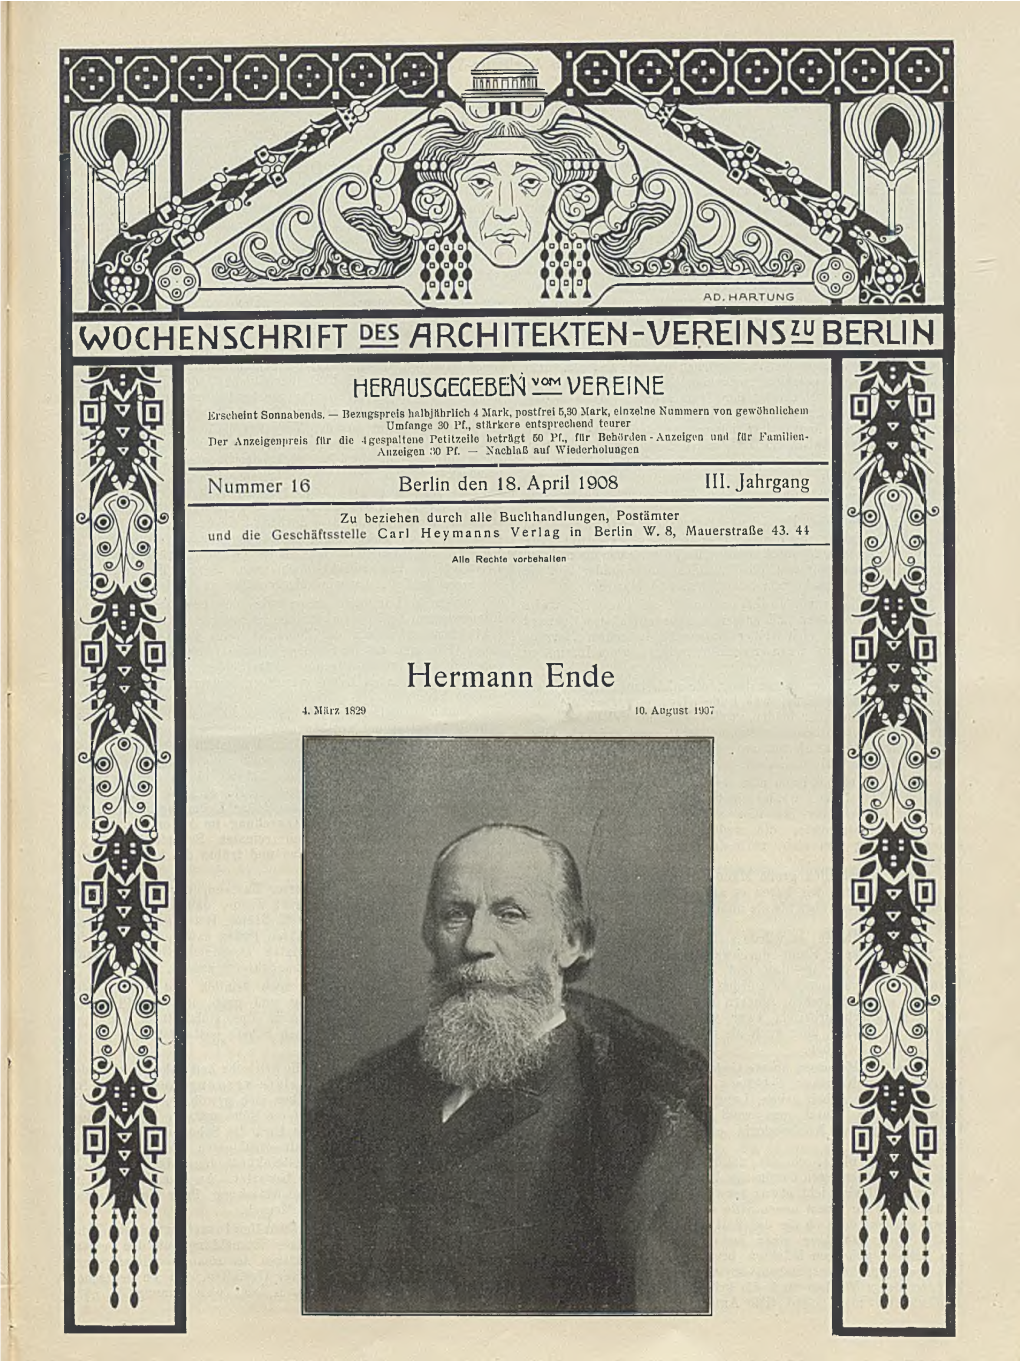 Hermann Ende 4